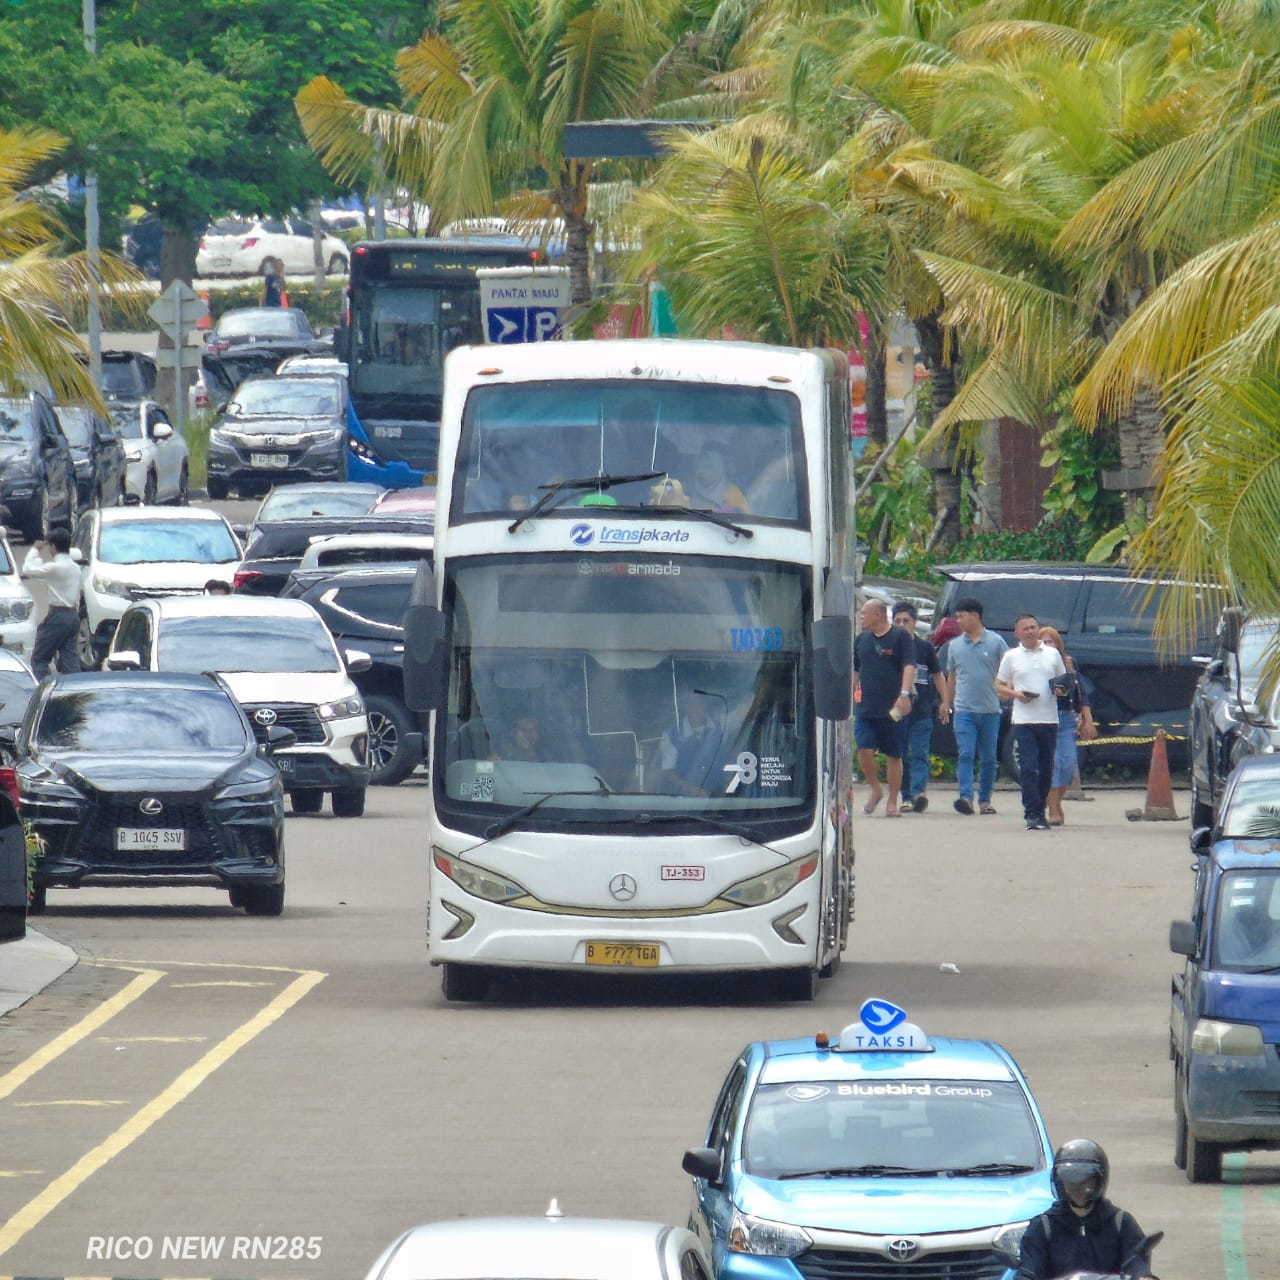 Layanan Bus Wisata (BW) TransJakarta dengan armada bus tingkat berwarna putih. Di kejauhan terlihat armada bus TransJakarta dek tinggi (high deck) berwarna biru. | Foto: RED/Enrico Perdana Putra